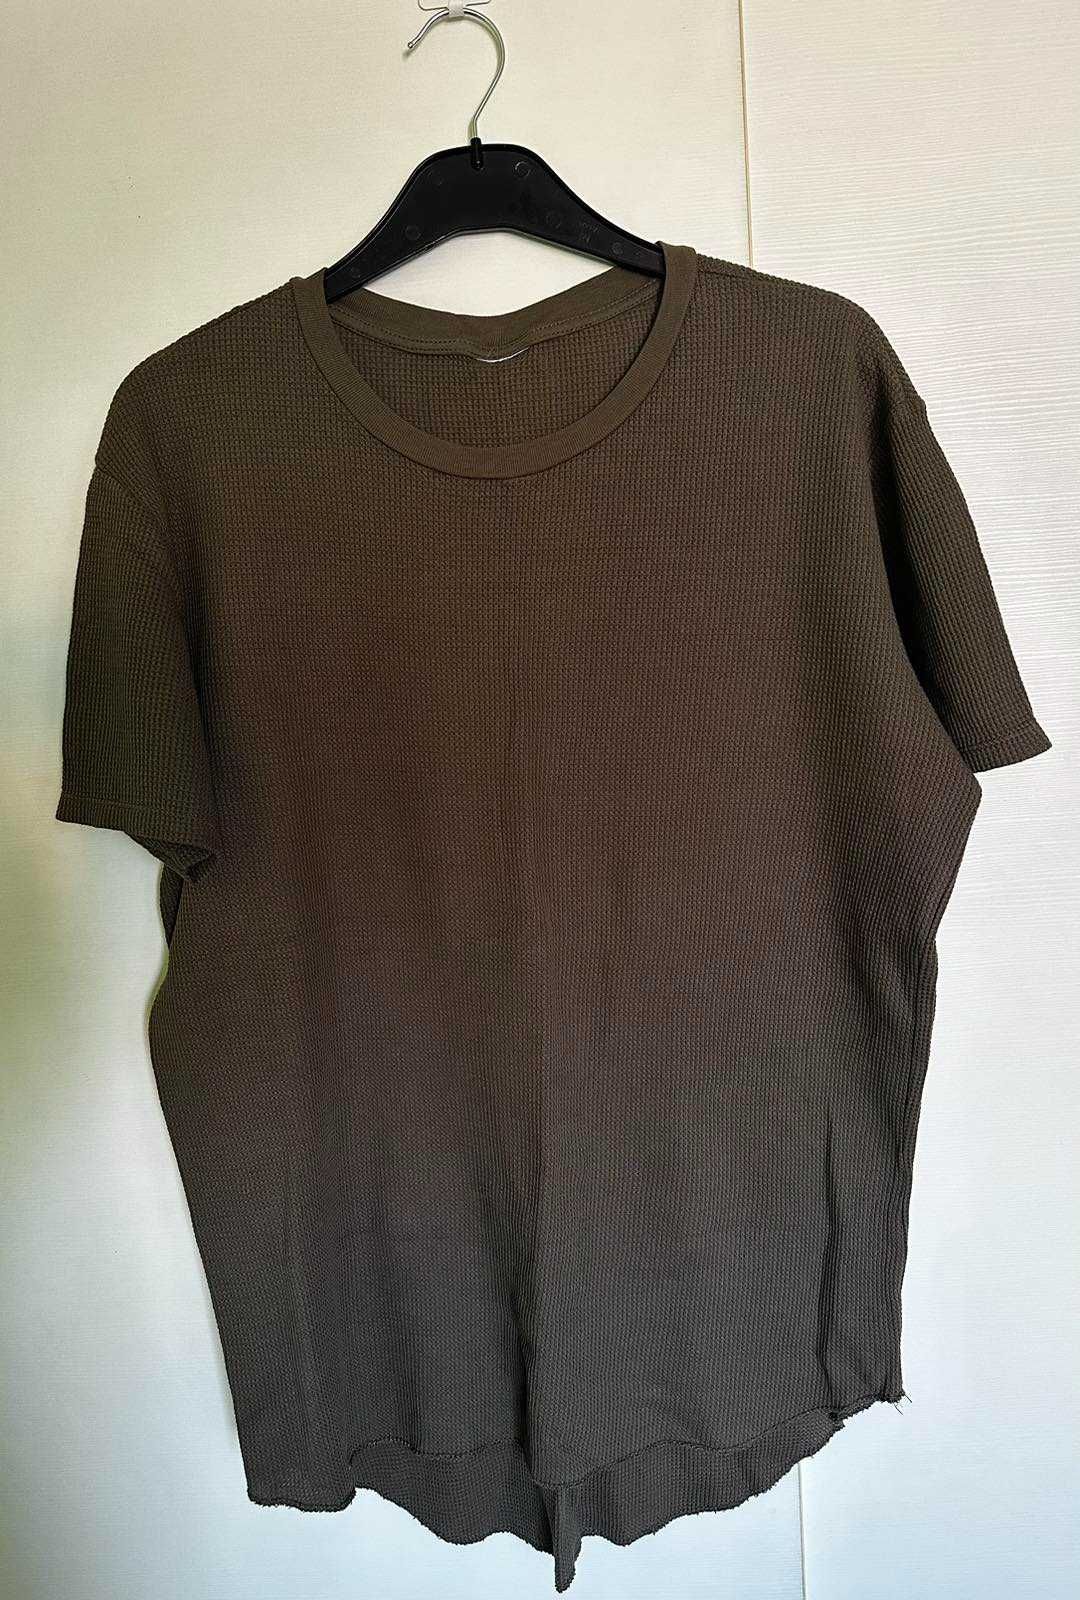 Zara мъжка тениска, L размер